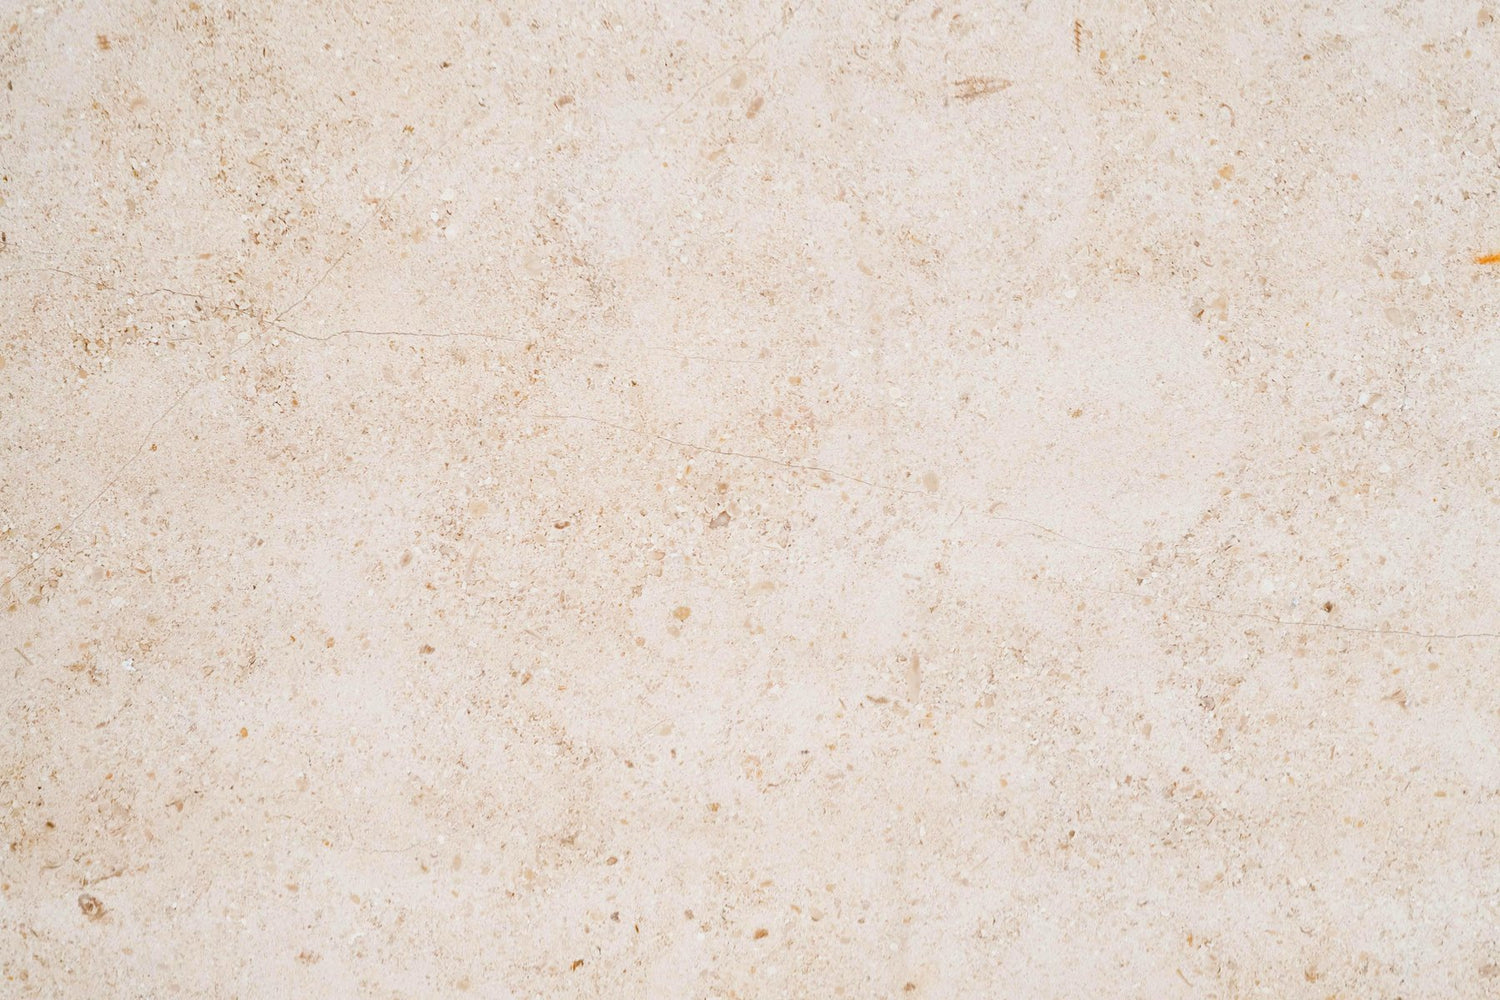 Full Tile Sample - Gascoigne Beige Limestone Tile - 12" x 24" x 1/2" Honed